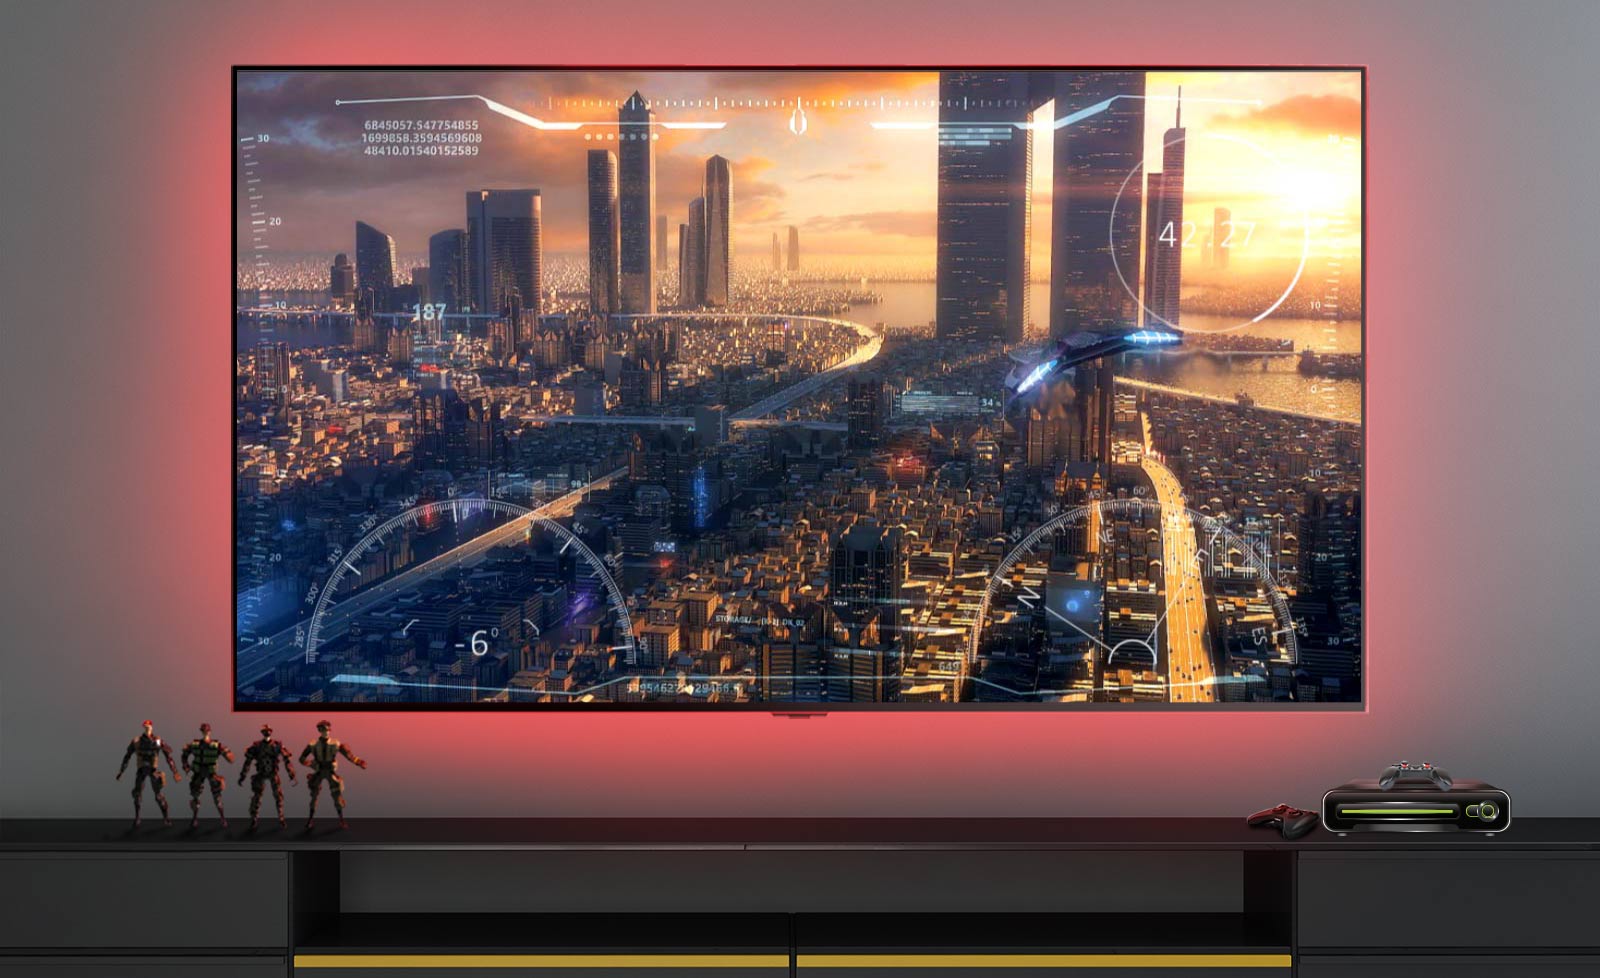 Una scena di un videogioco che raffigura un'astronave che sorvola una città visualizzata su uno schermo televisivo (riproduci video).